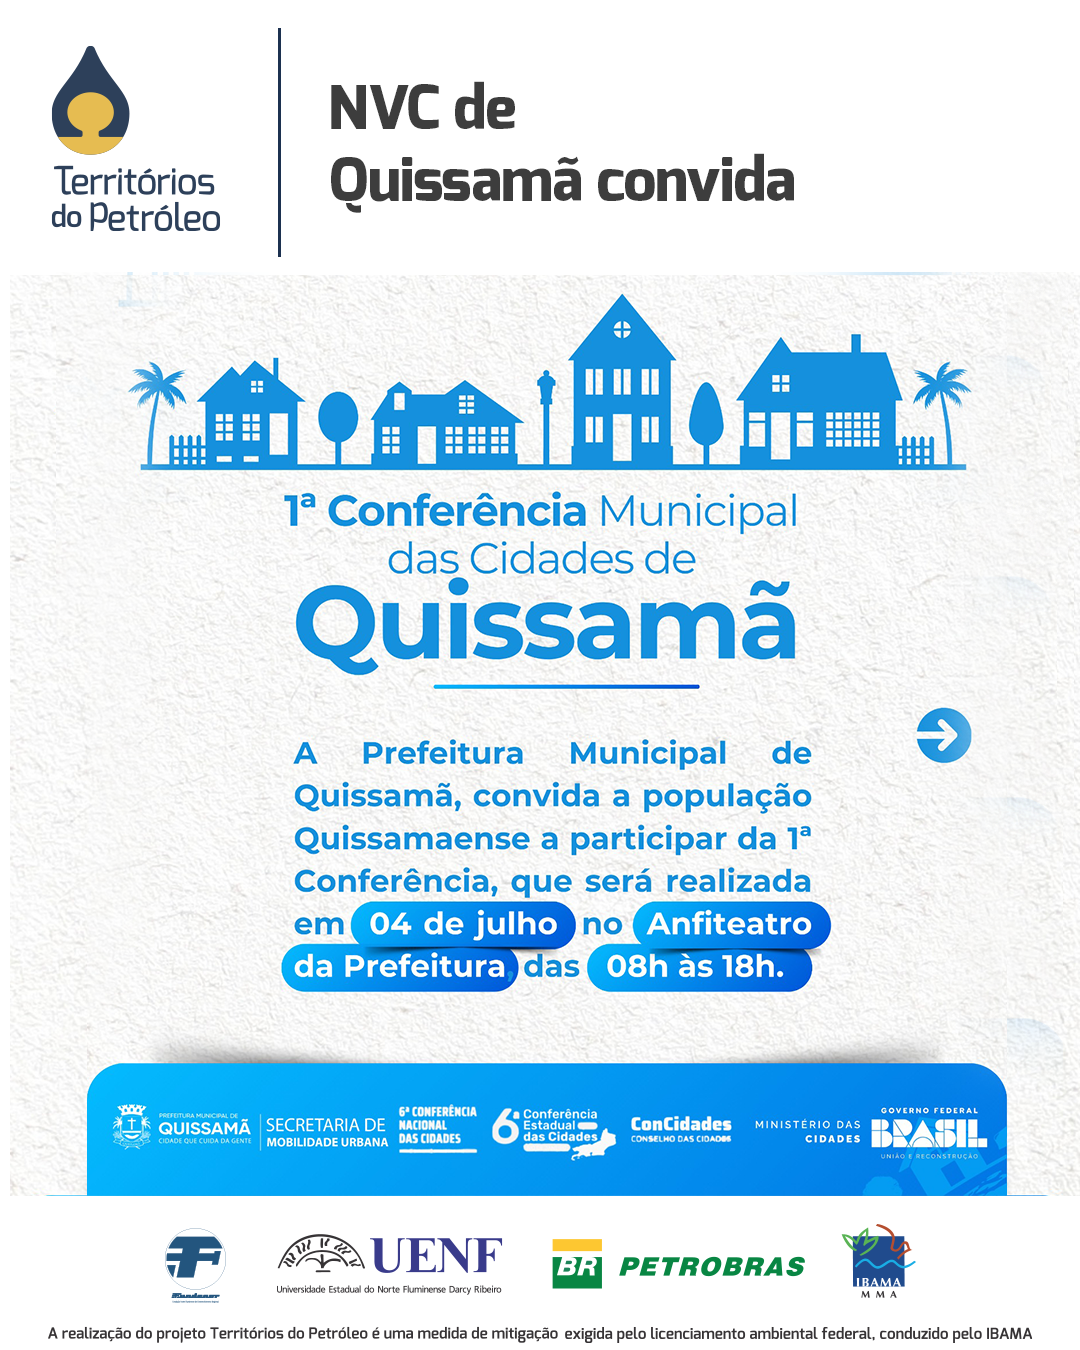 NVC de Quissamã convida para 1ª Conferência Municipal  das Cidades